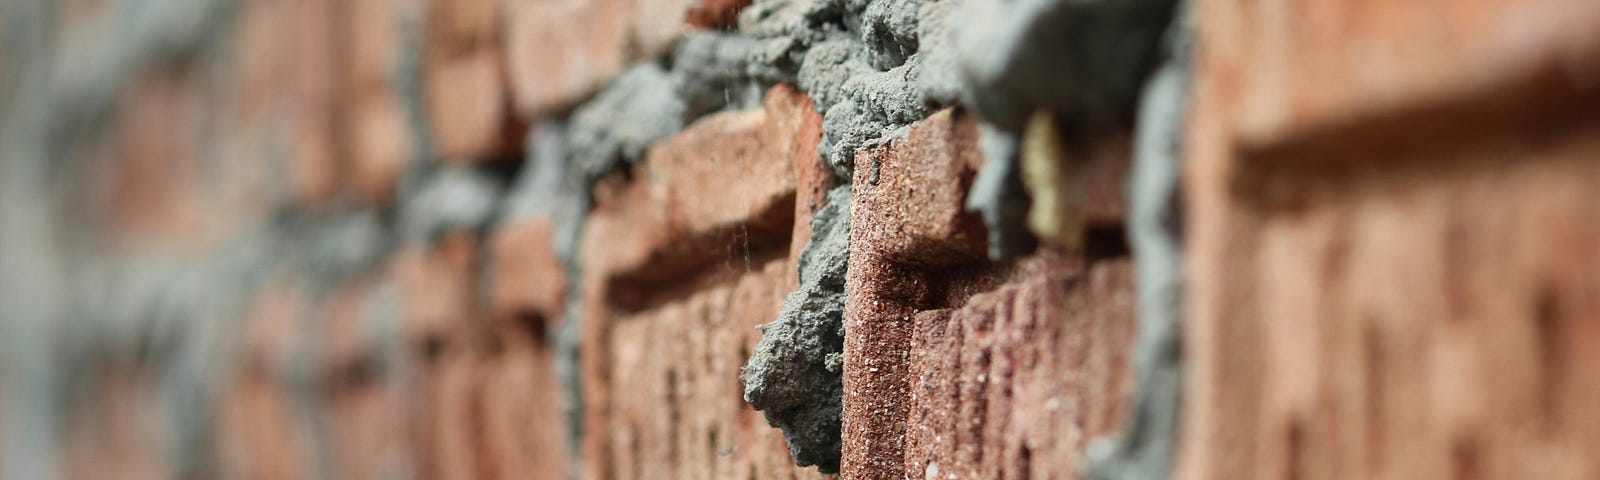 Bricks and mortar form a strong wall.